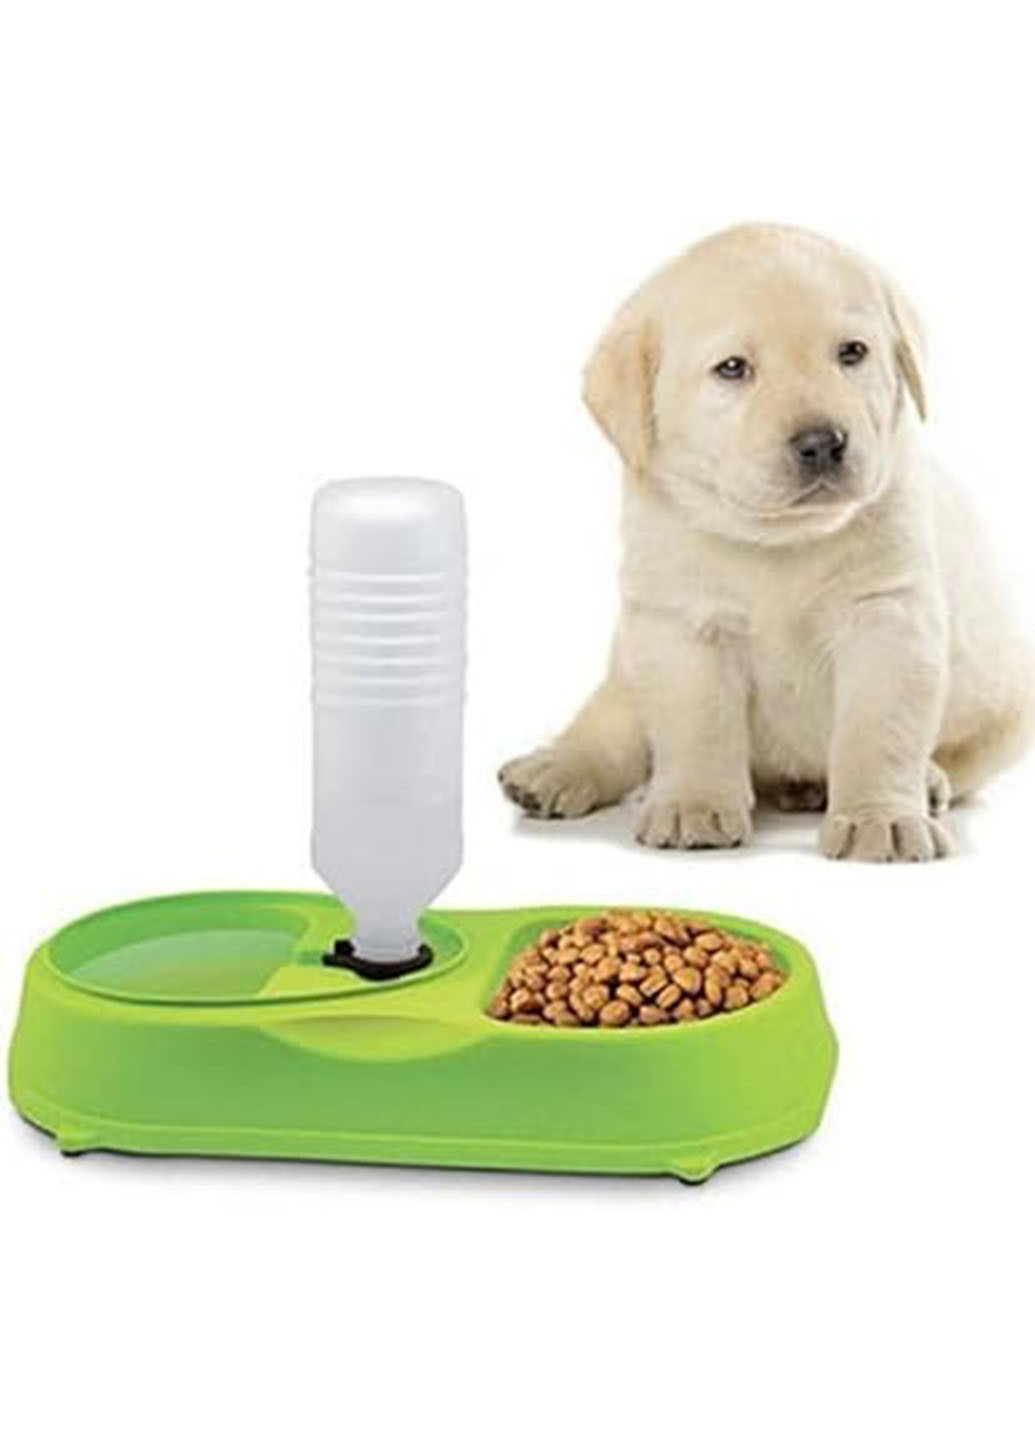 Двойная миска с поилкой Pet Feeder для домашних животных пластиковая 35 см х 17 см х 5.5 см Зеленый (113U) Good Idea (271679546)